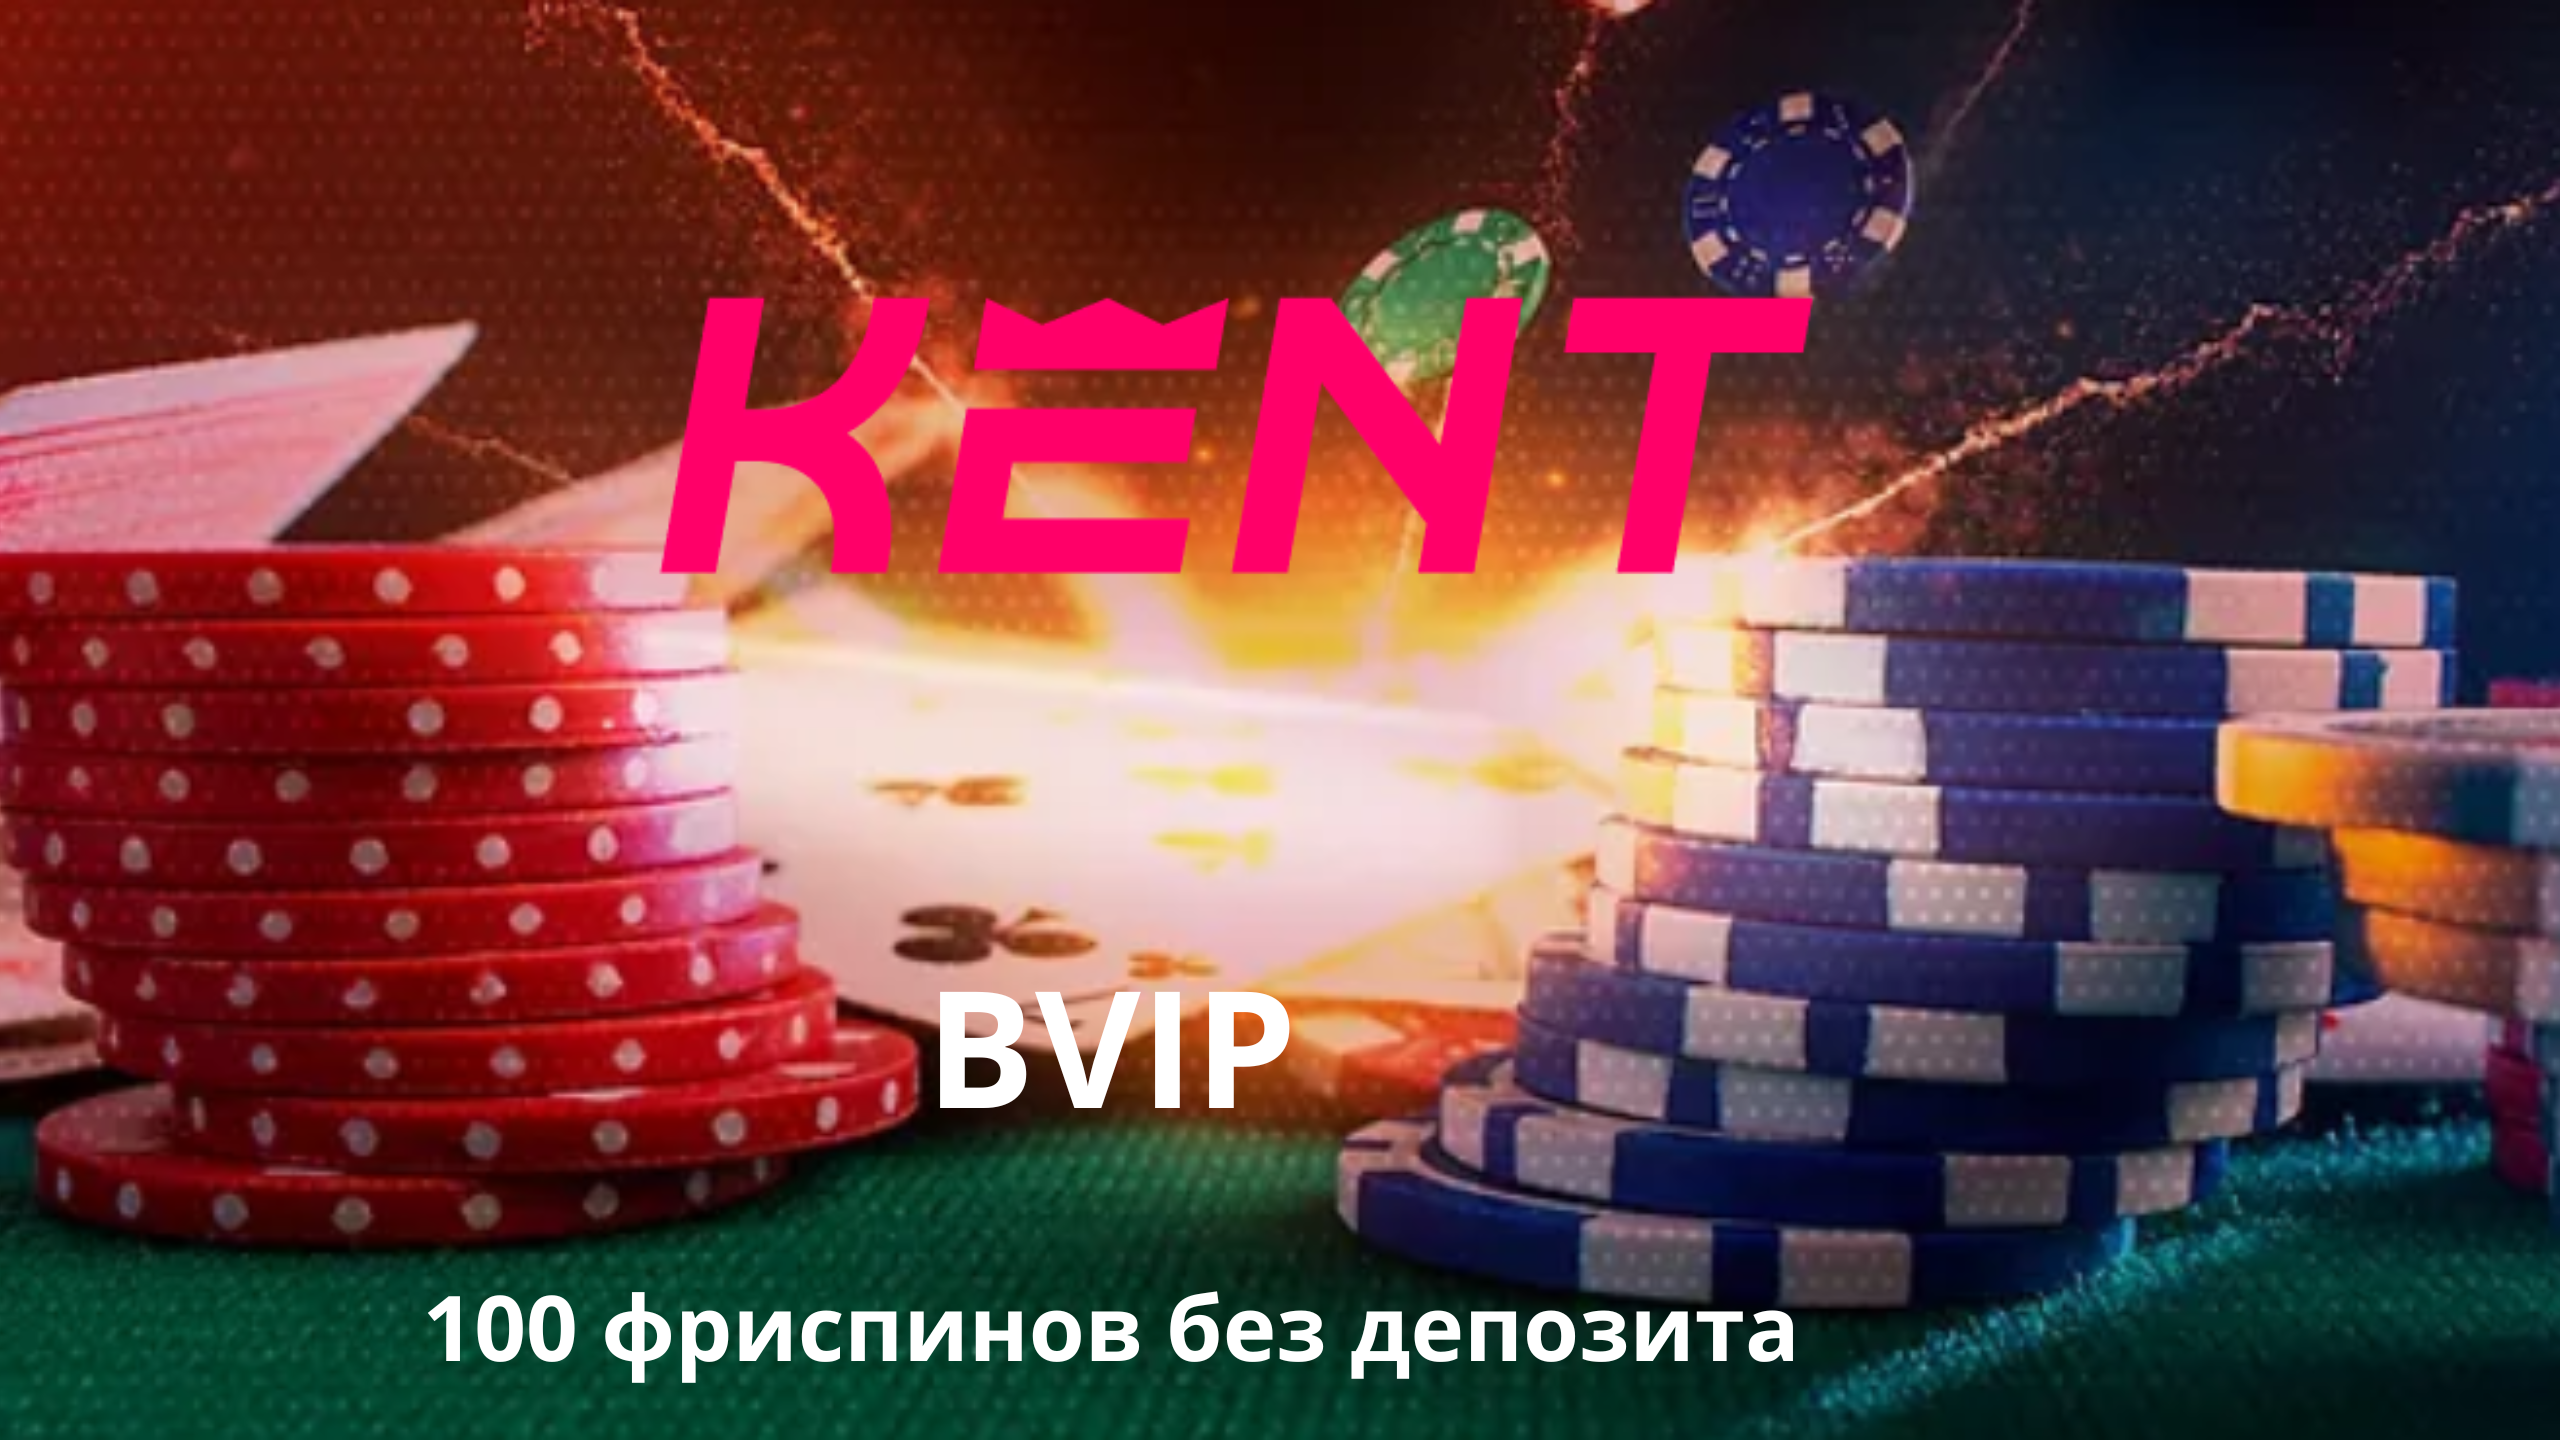 Kent casino регистрация на сайте kentcasino add1